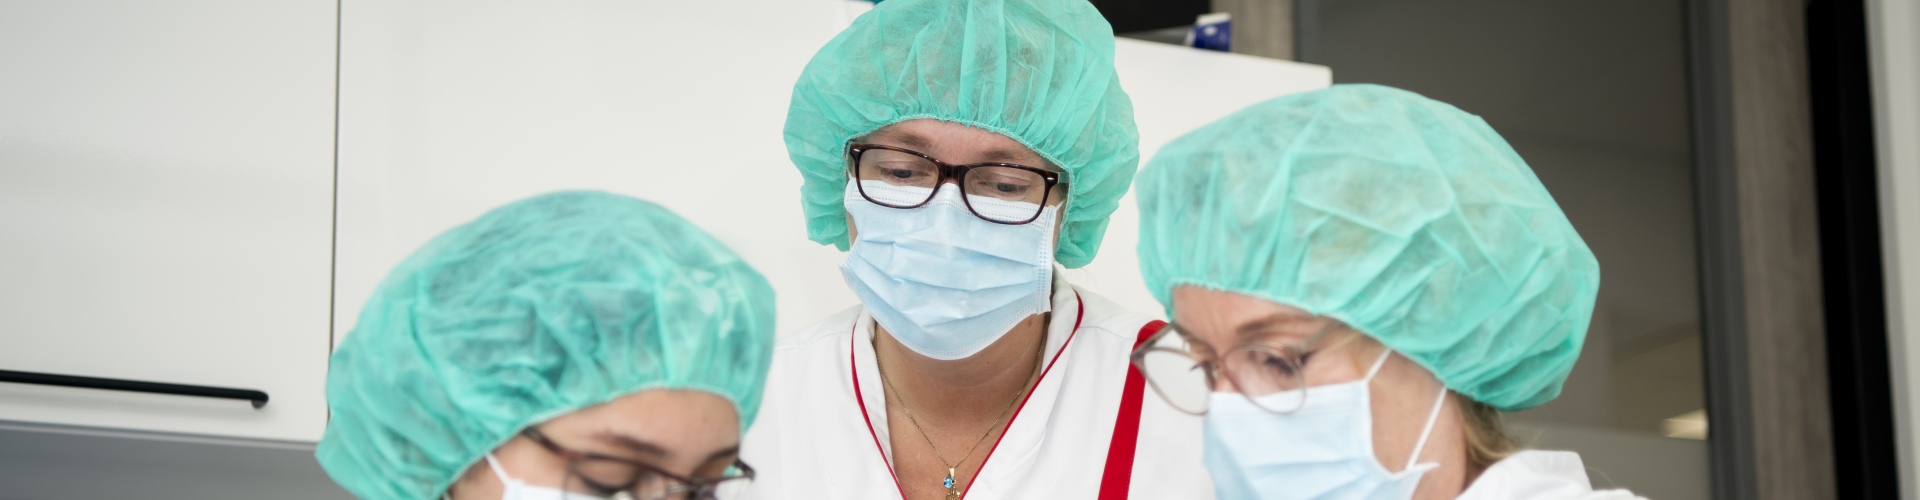 Implantologie in Groningen Specialist